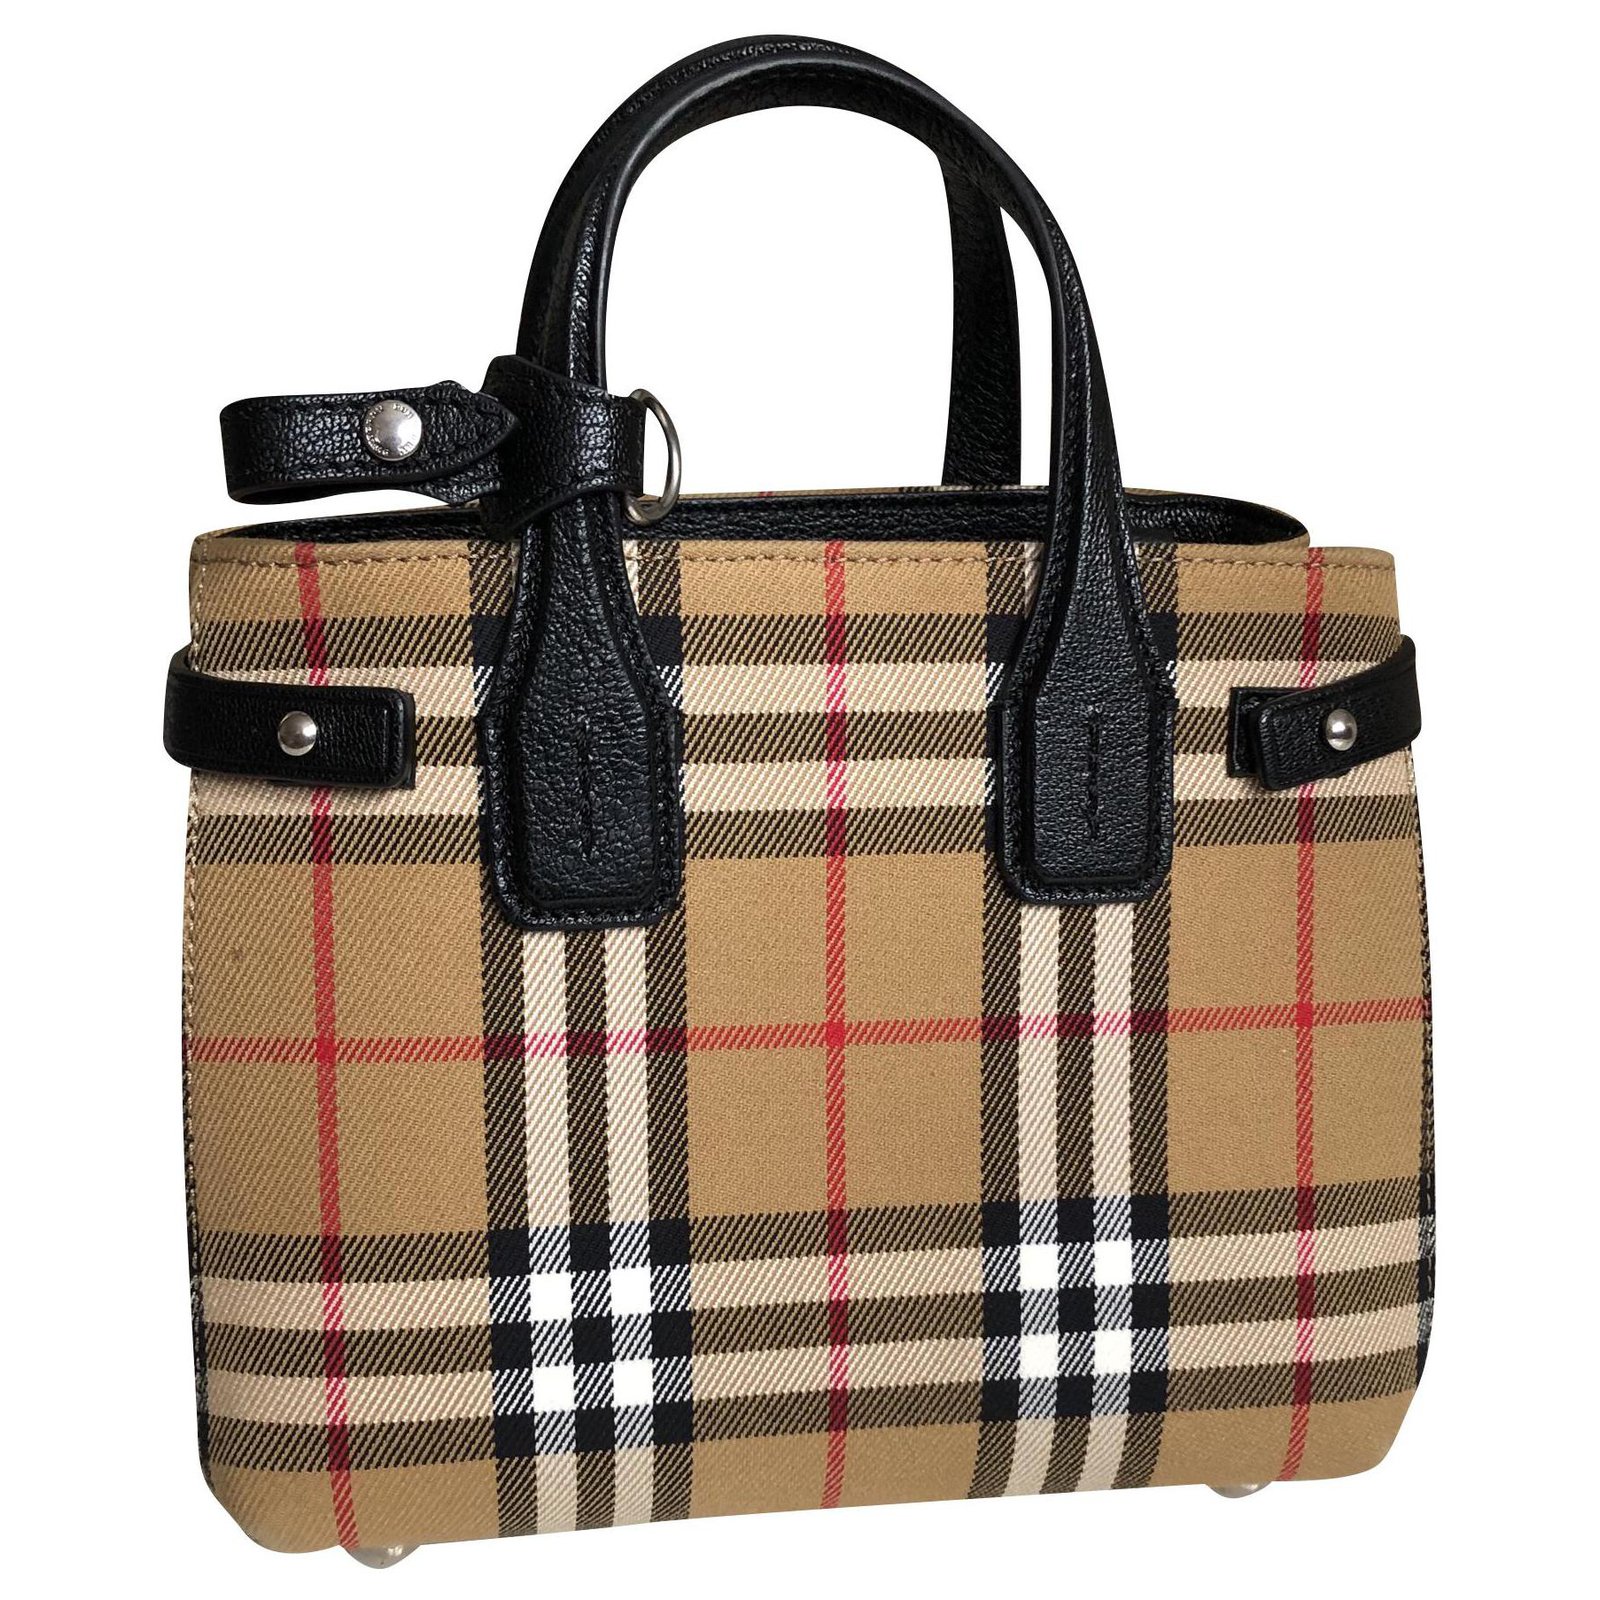 burberry cloth handbag